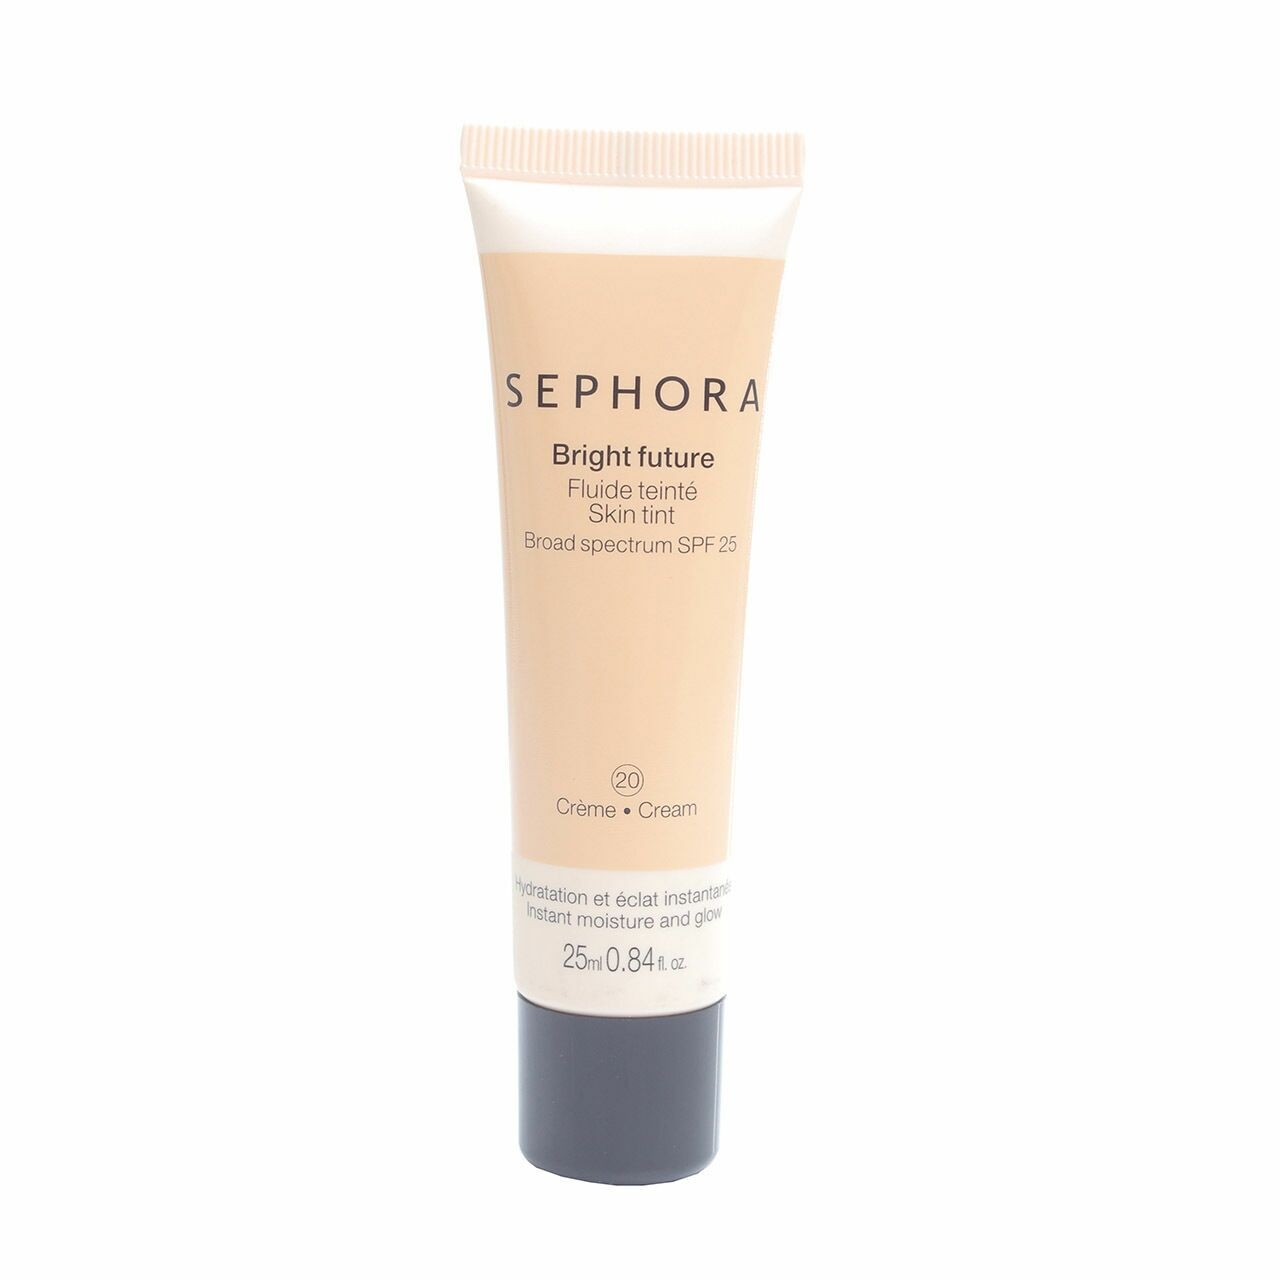 Sephora Bright Future Skin Tint 20 Cream Faces